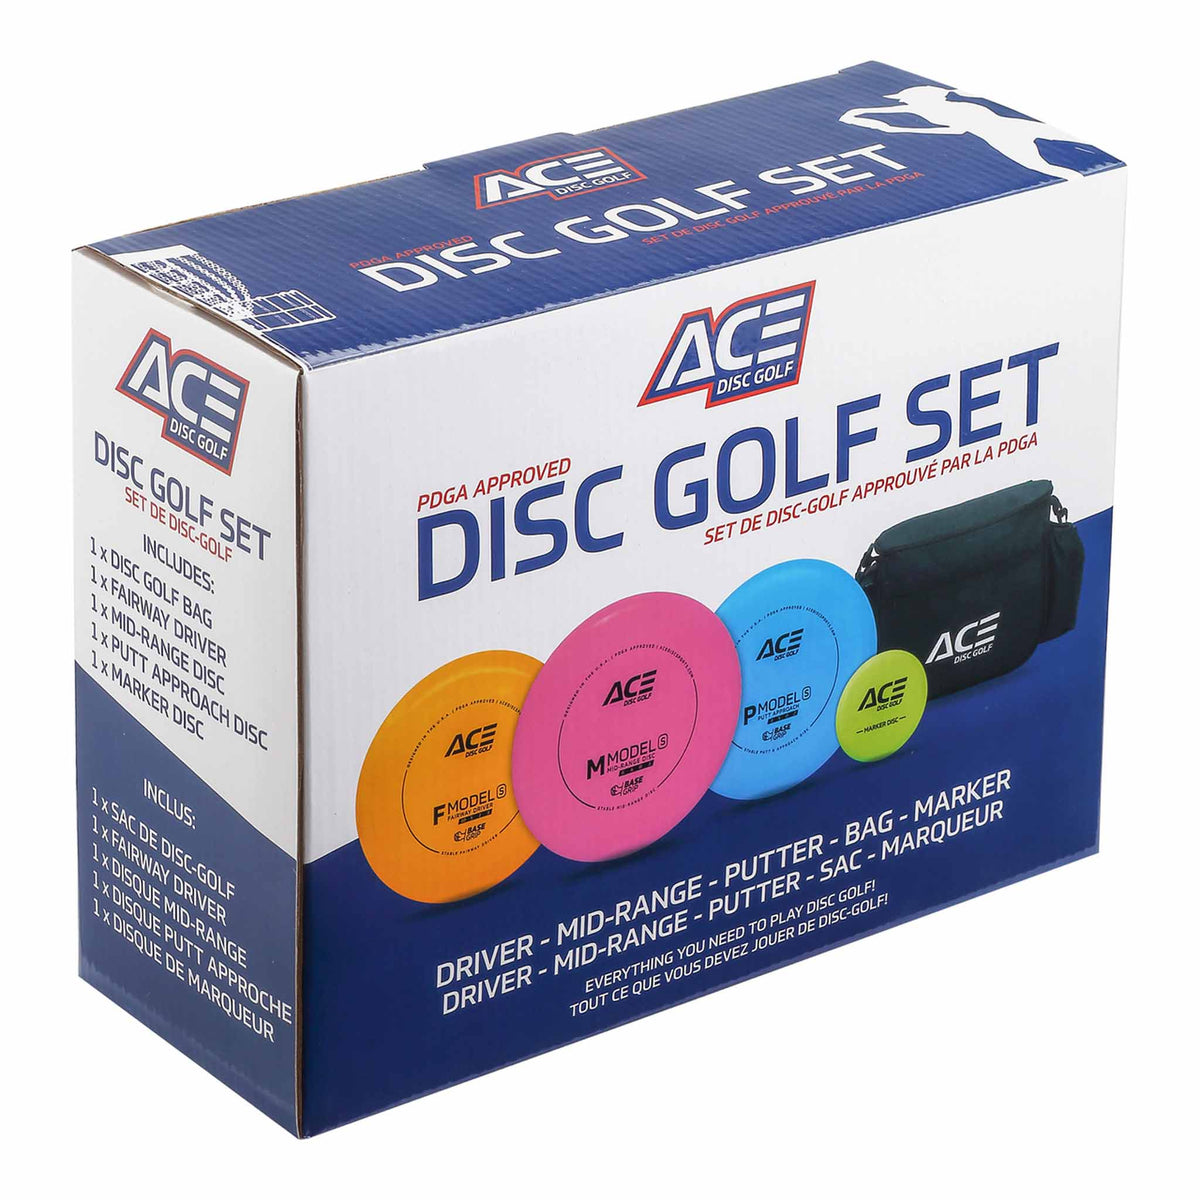 Prodigy Ace Disc Golf Starter Set